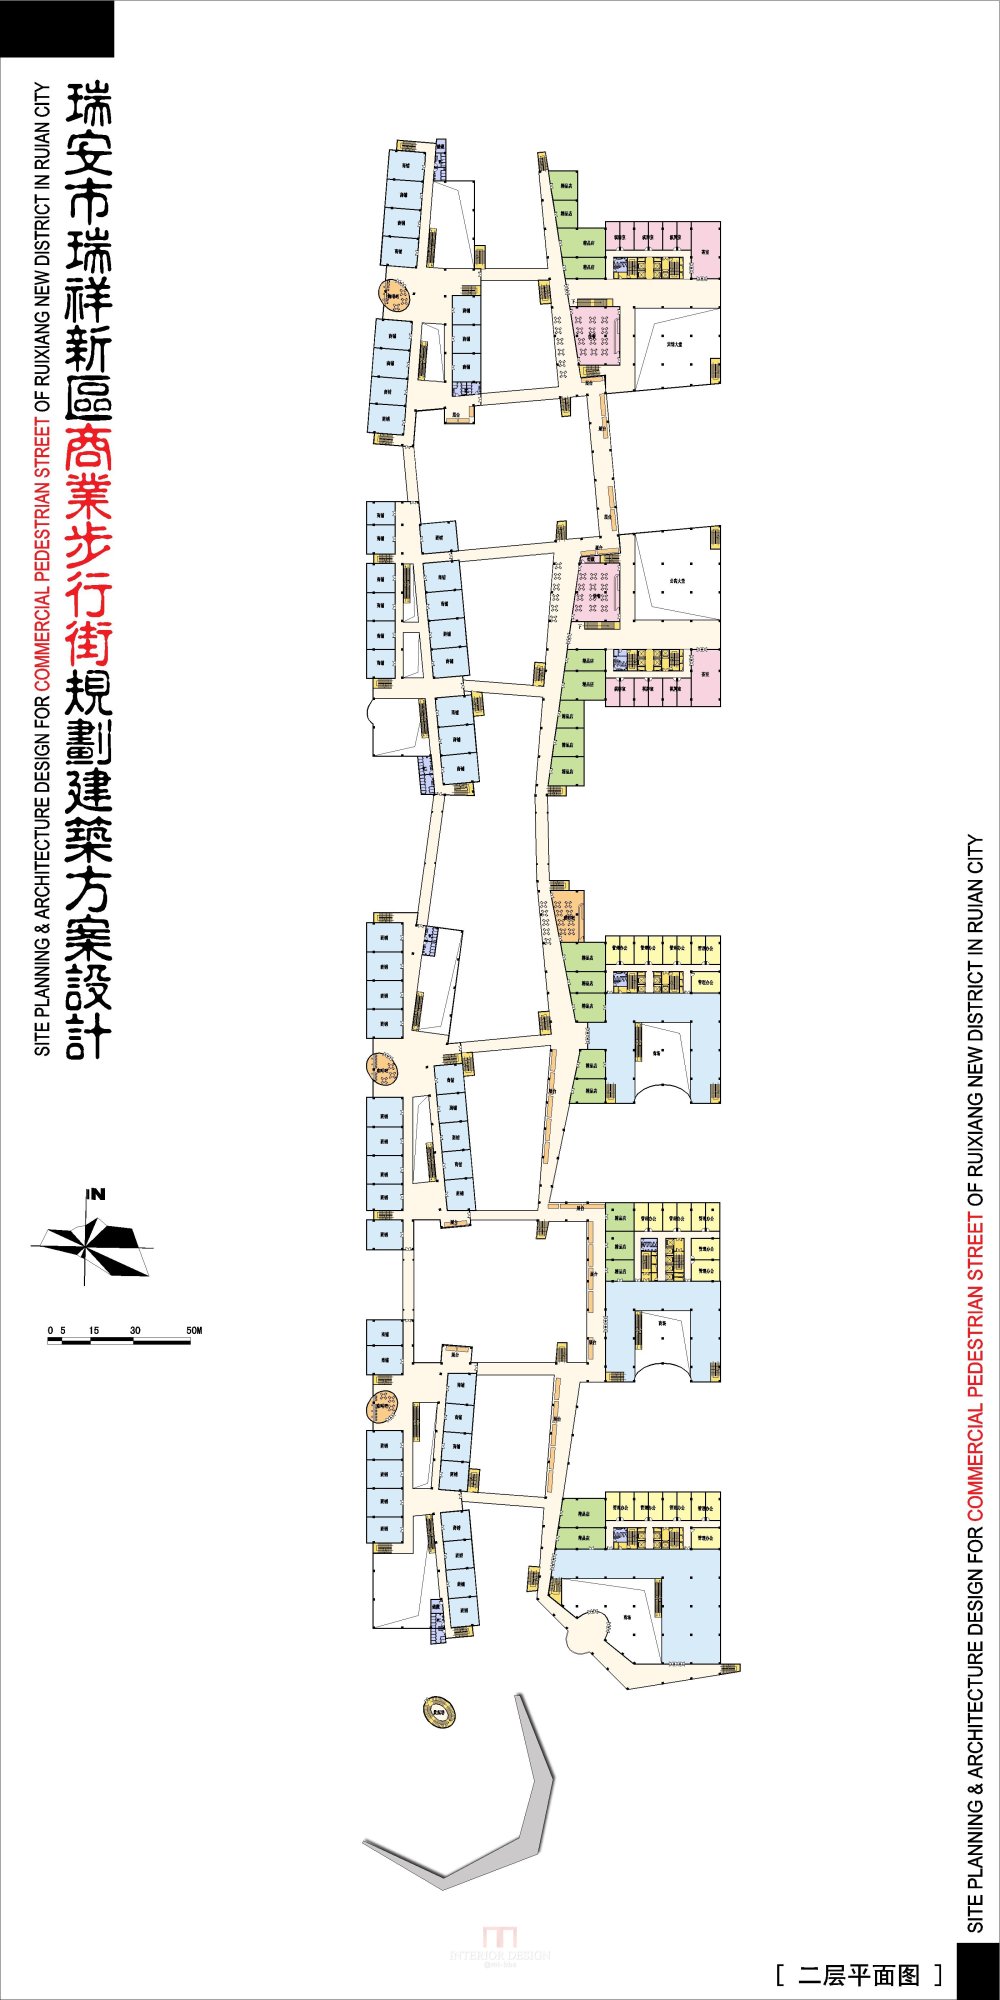 浙江瑞安新区商业步行街规划建筑设计方案_4-04瑞安商业街-二层平面图.jpg